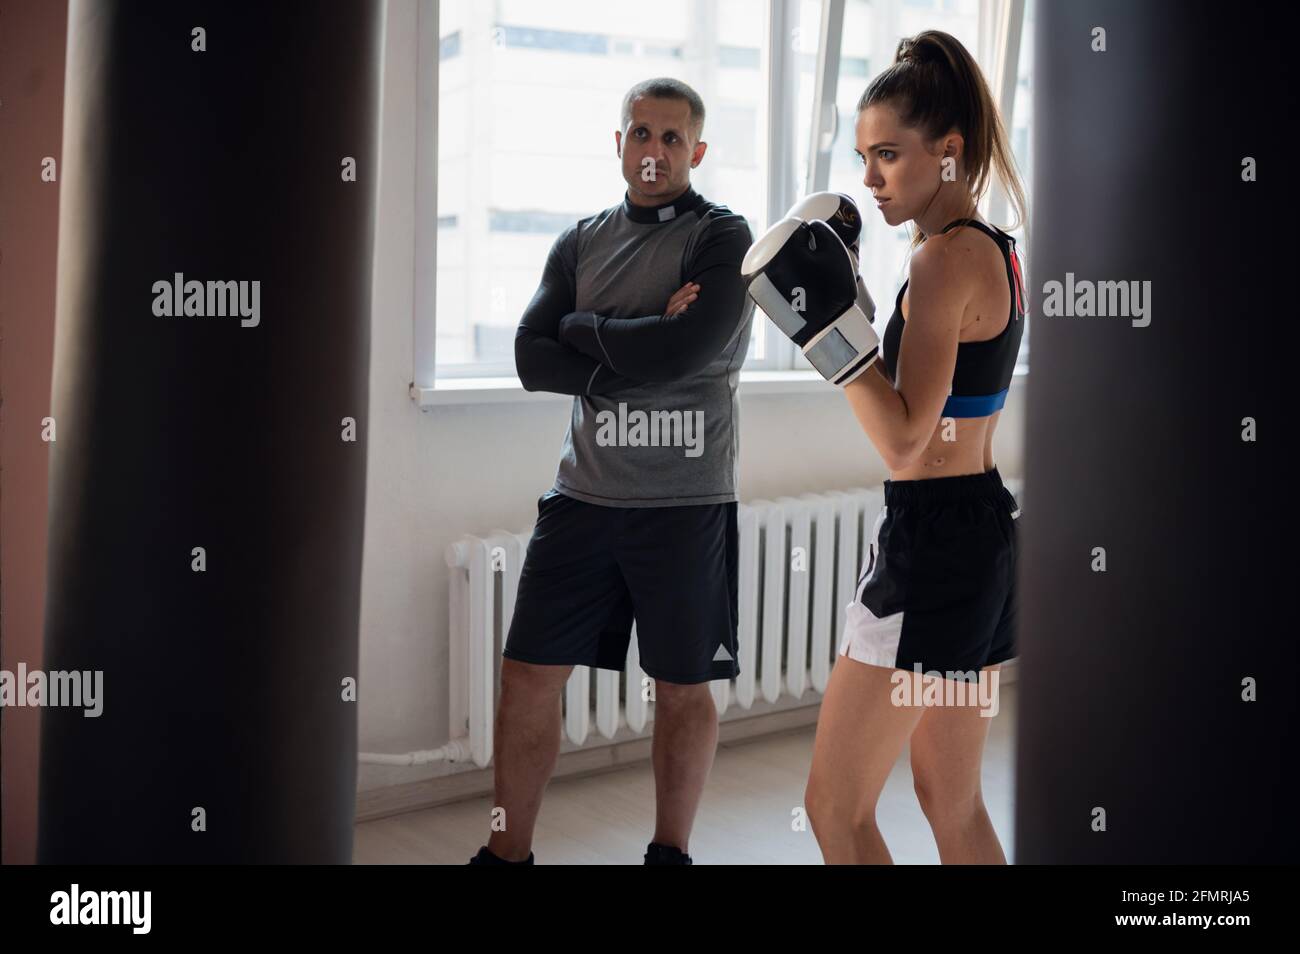 Un entrenador estricto observa a su estudiante de kickboxer practicar un puñetazo en una bolsa de perforación en una espaciosa sala de entrenamiento. Foto de stock